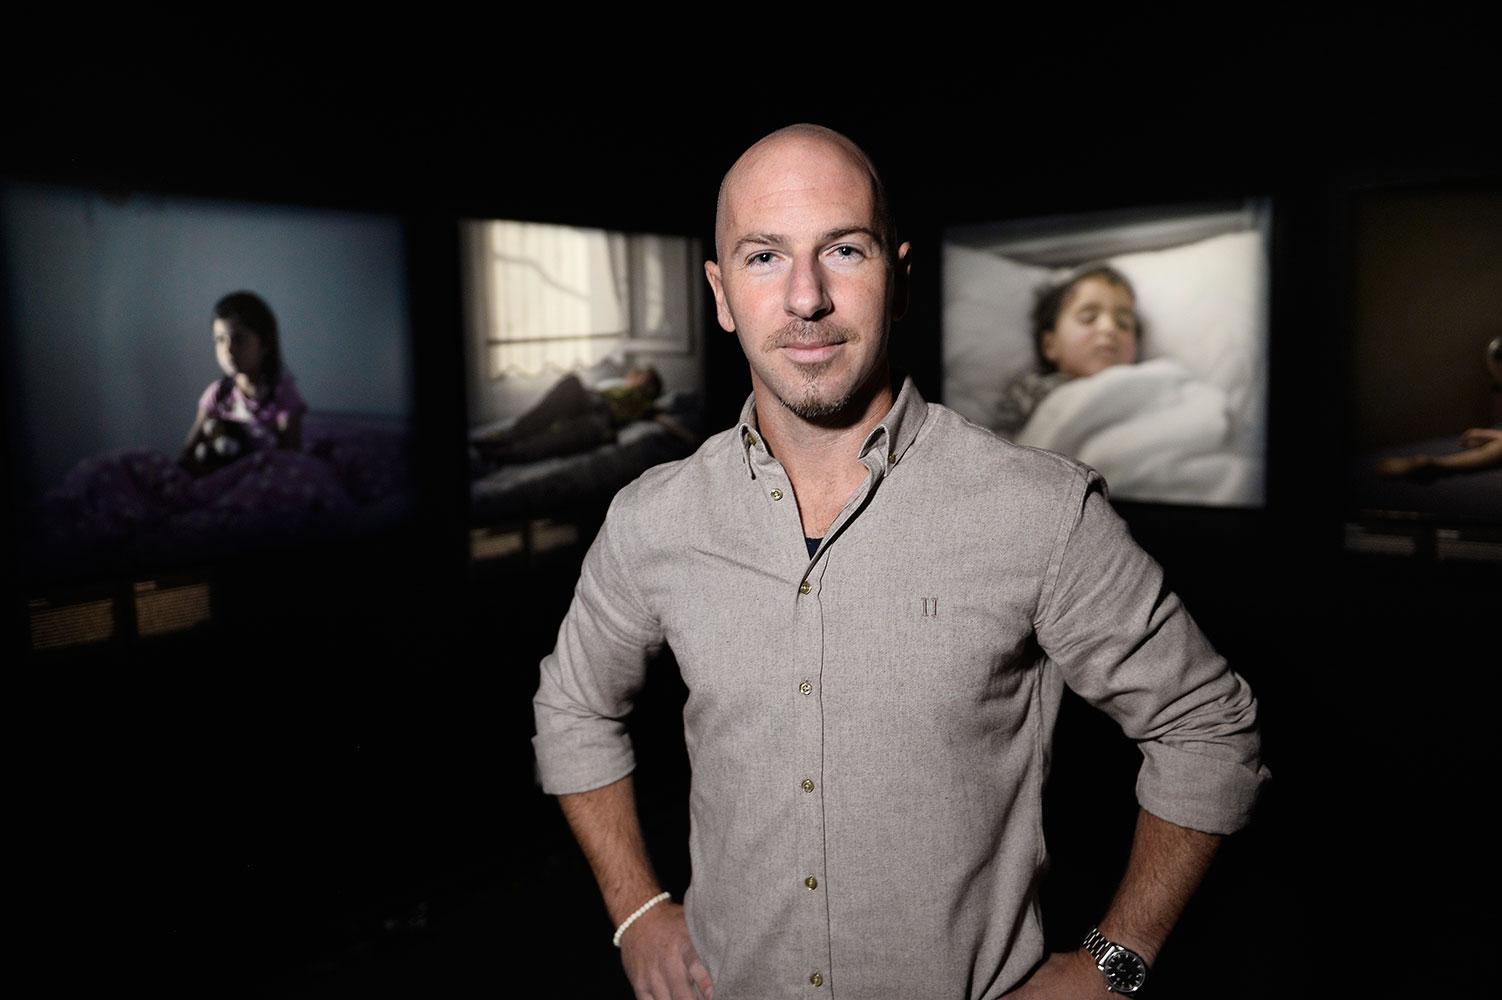 Fotografen Magnus Wennman var väldigt glad över genomslaget som reportaget ”Där barnen sover” har fått. ” Jag har fått otroligt fina reaktioner”.